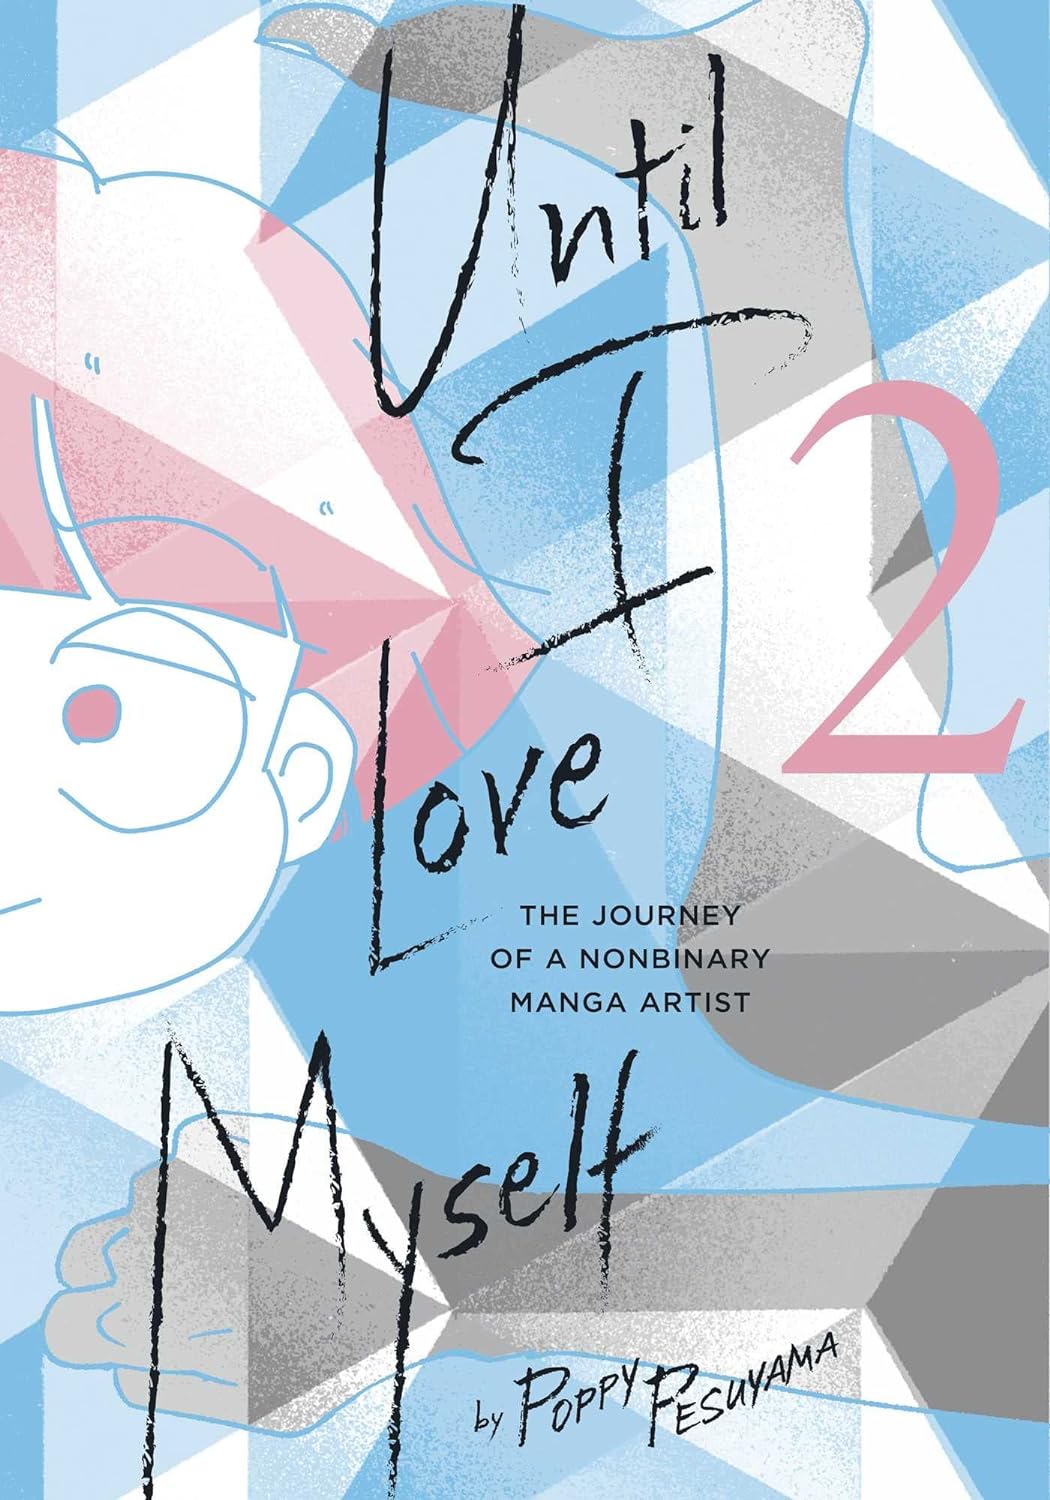 Until I Love Myself - Volume 2 | Poppy Pesuyama